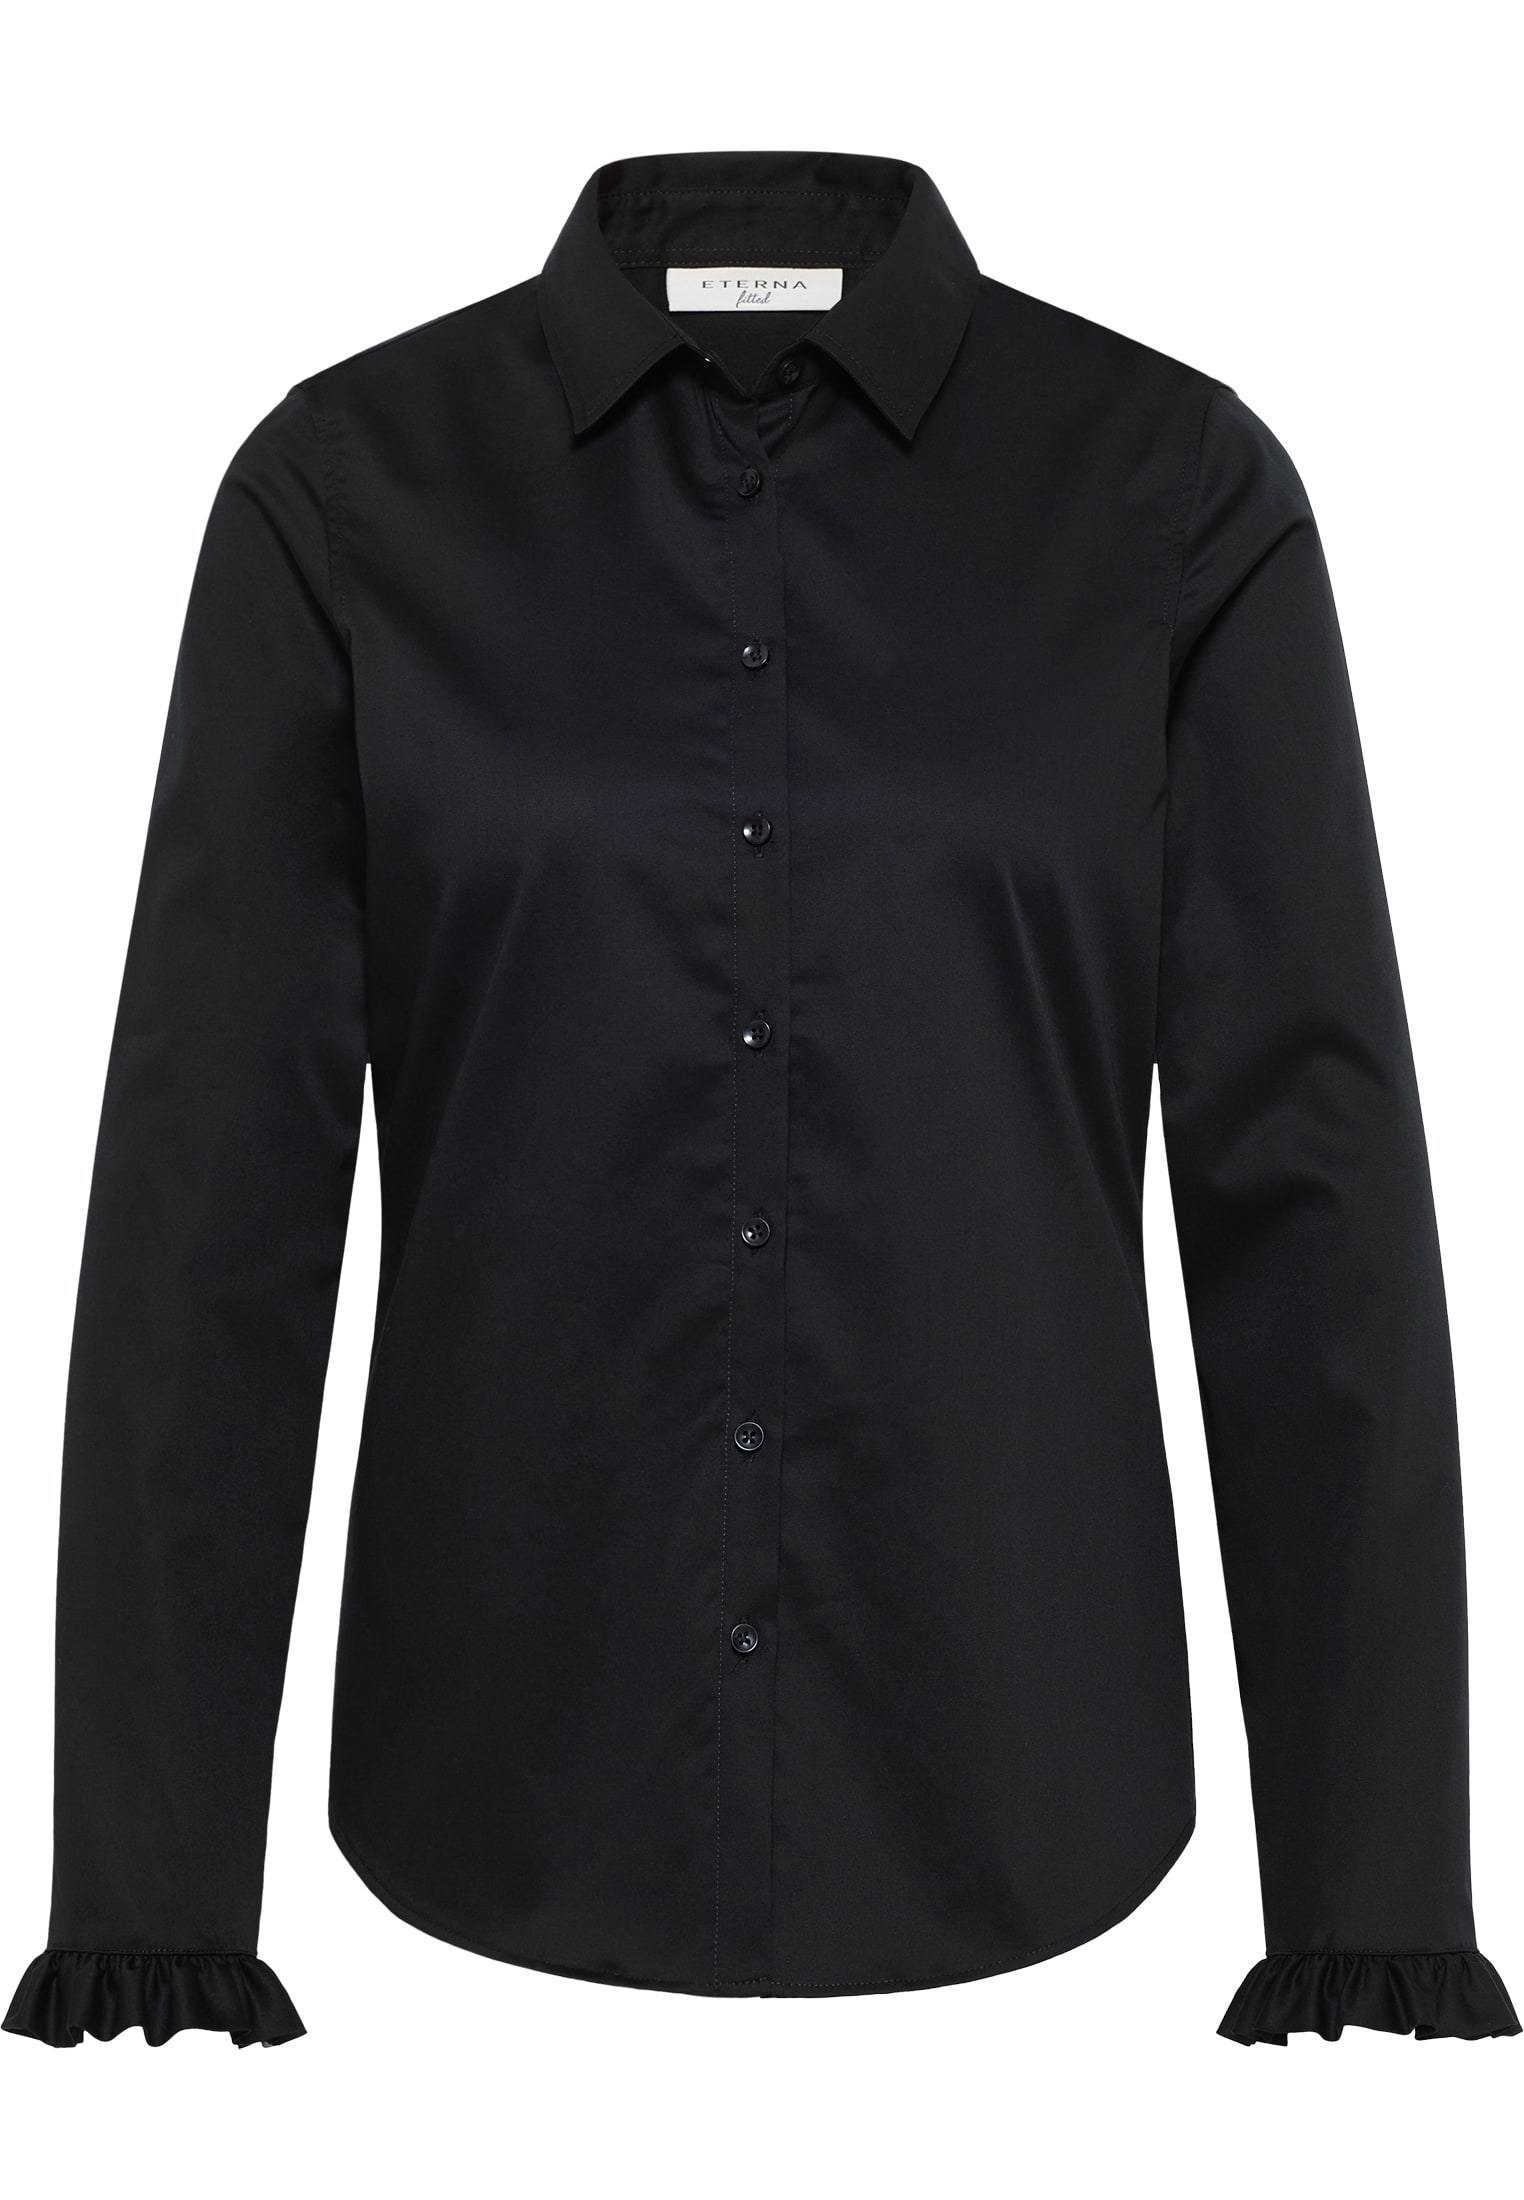 Satin Shirt Bluse in schwarz unifarben | schwarz | Langarm | 40 |  2BL04181-03-91-40-1/1